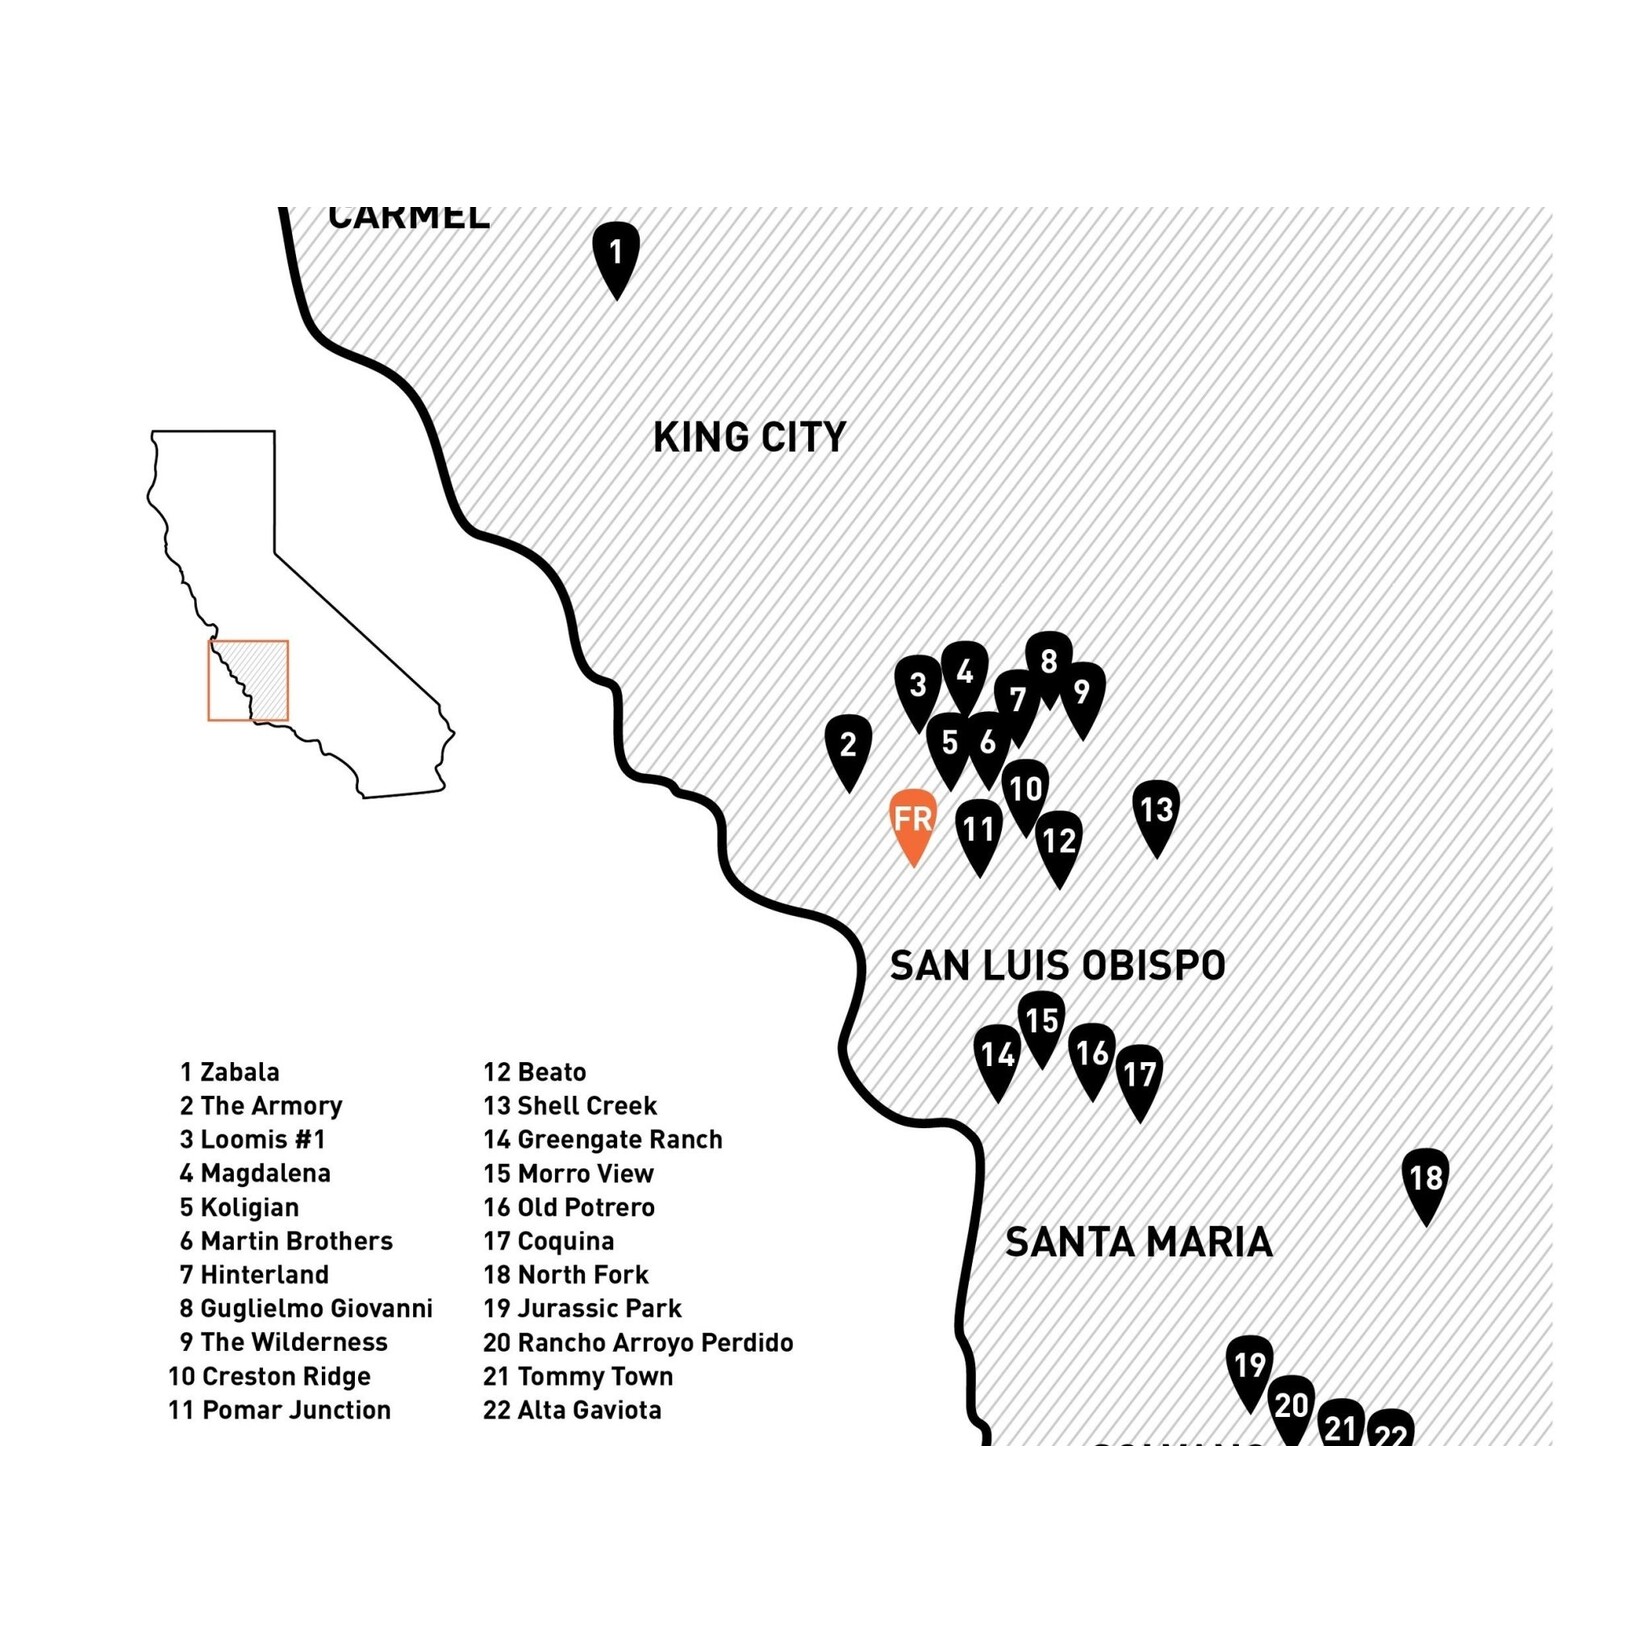 Field Recordings Field Recordings FREDDO Sangiovese (Red Label) ORGANIC 2022 Paso Robles California